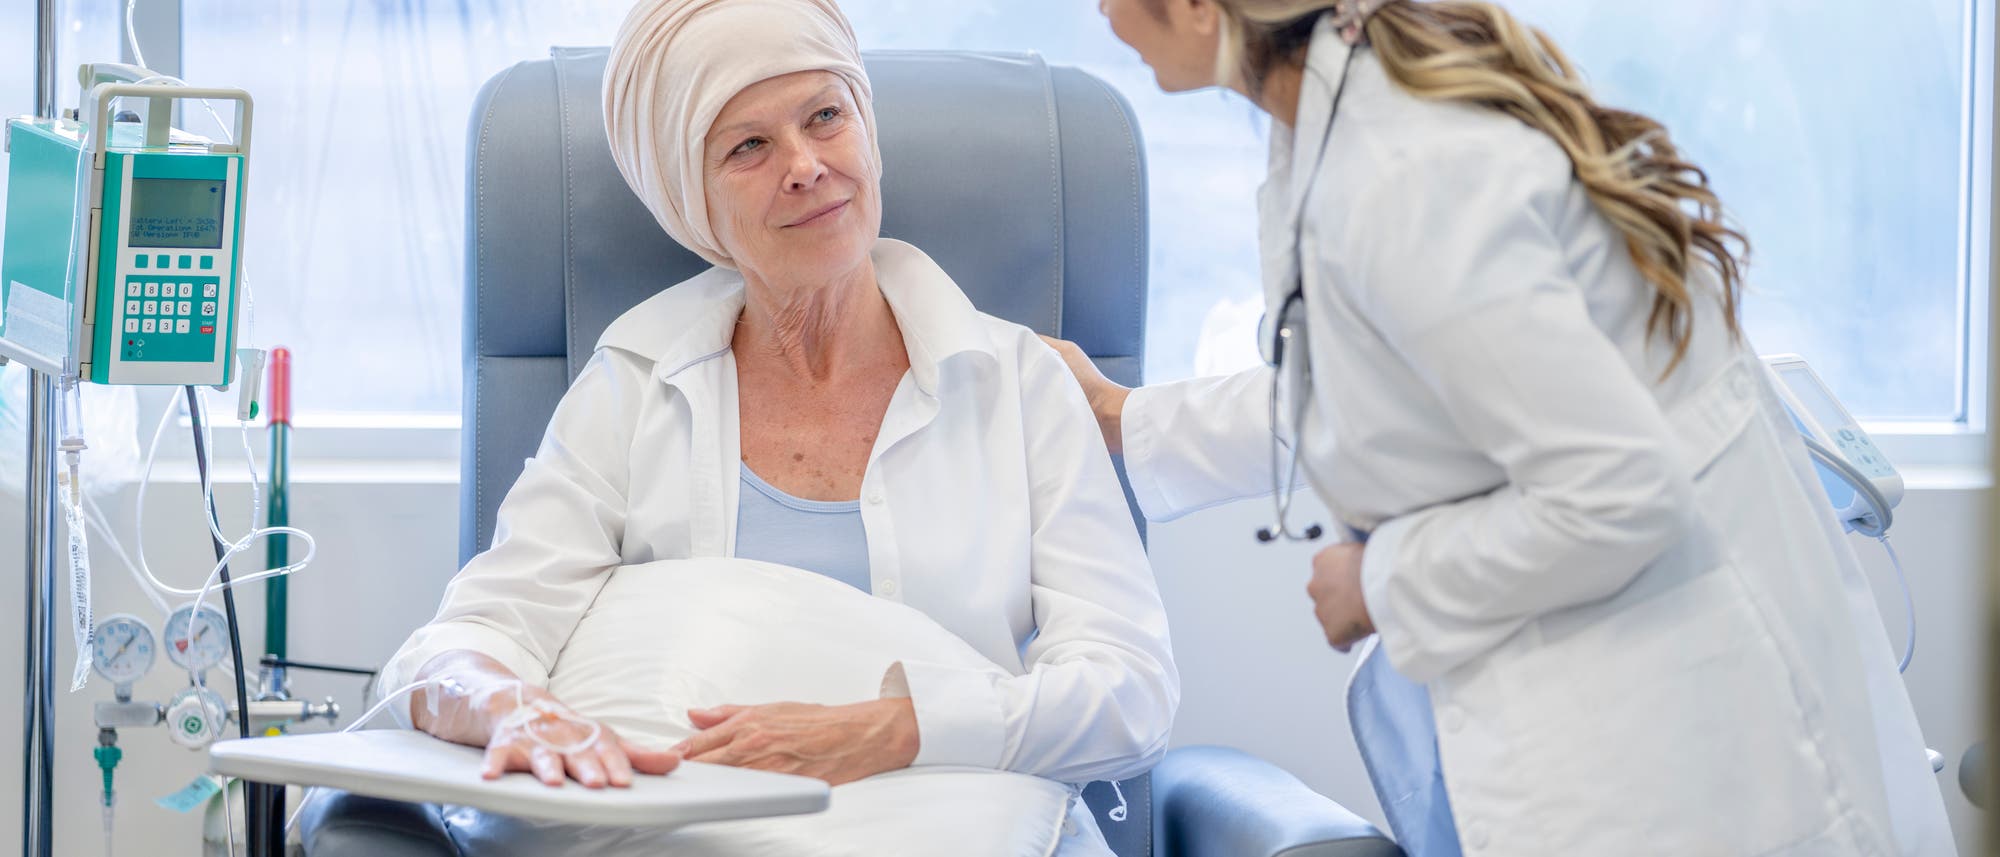 Eine Onkologin spricht mit eine Krebspatientin, die eine Chemotherapie erhält. Die Patientin hört aufmerksam zu.